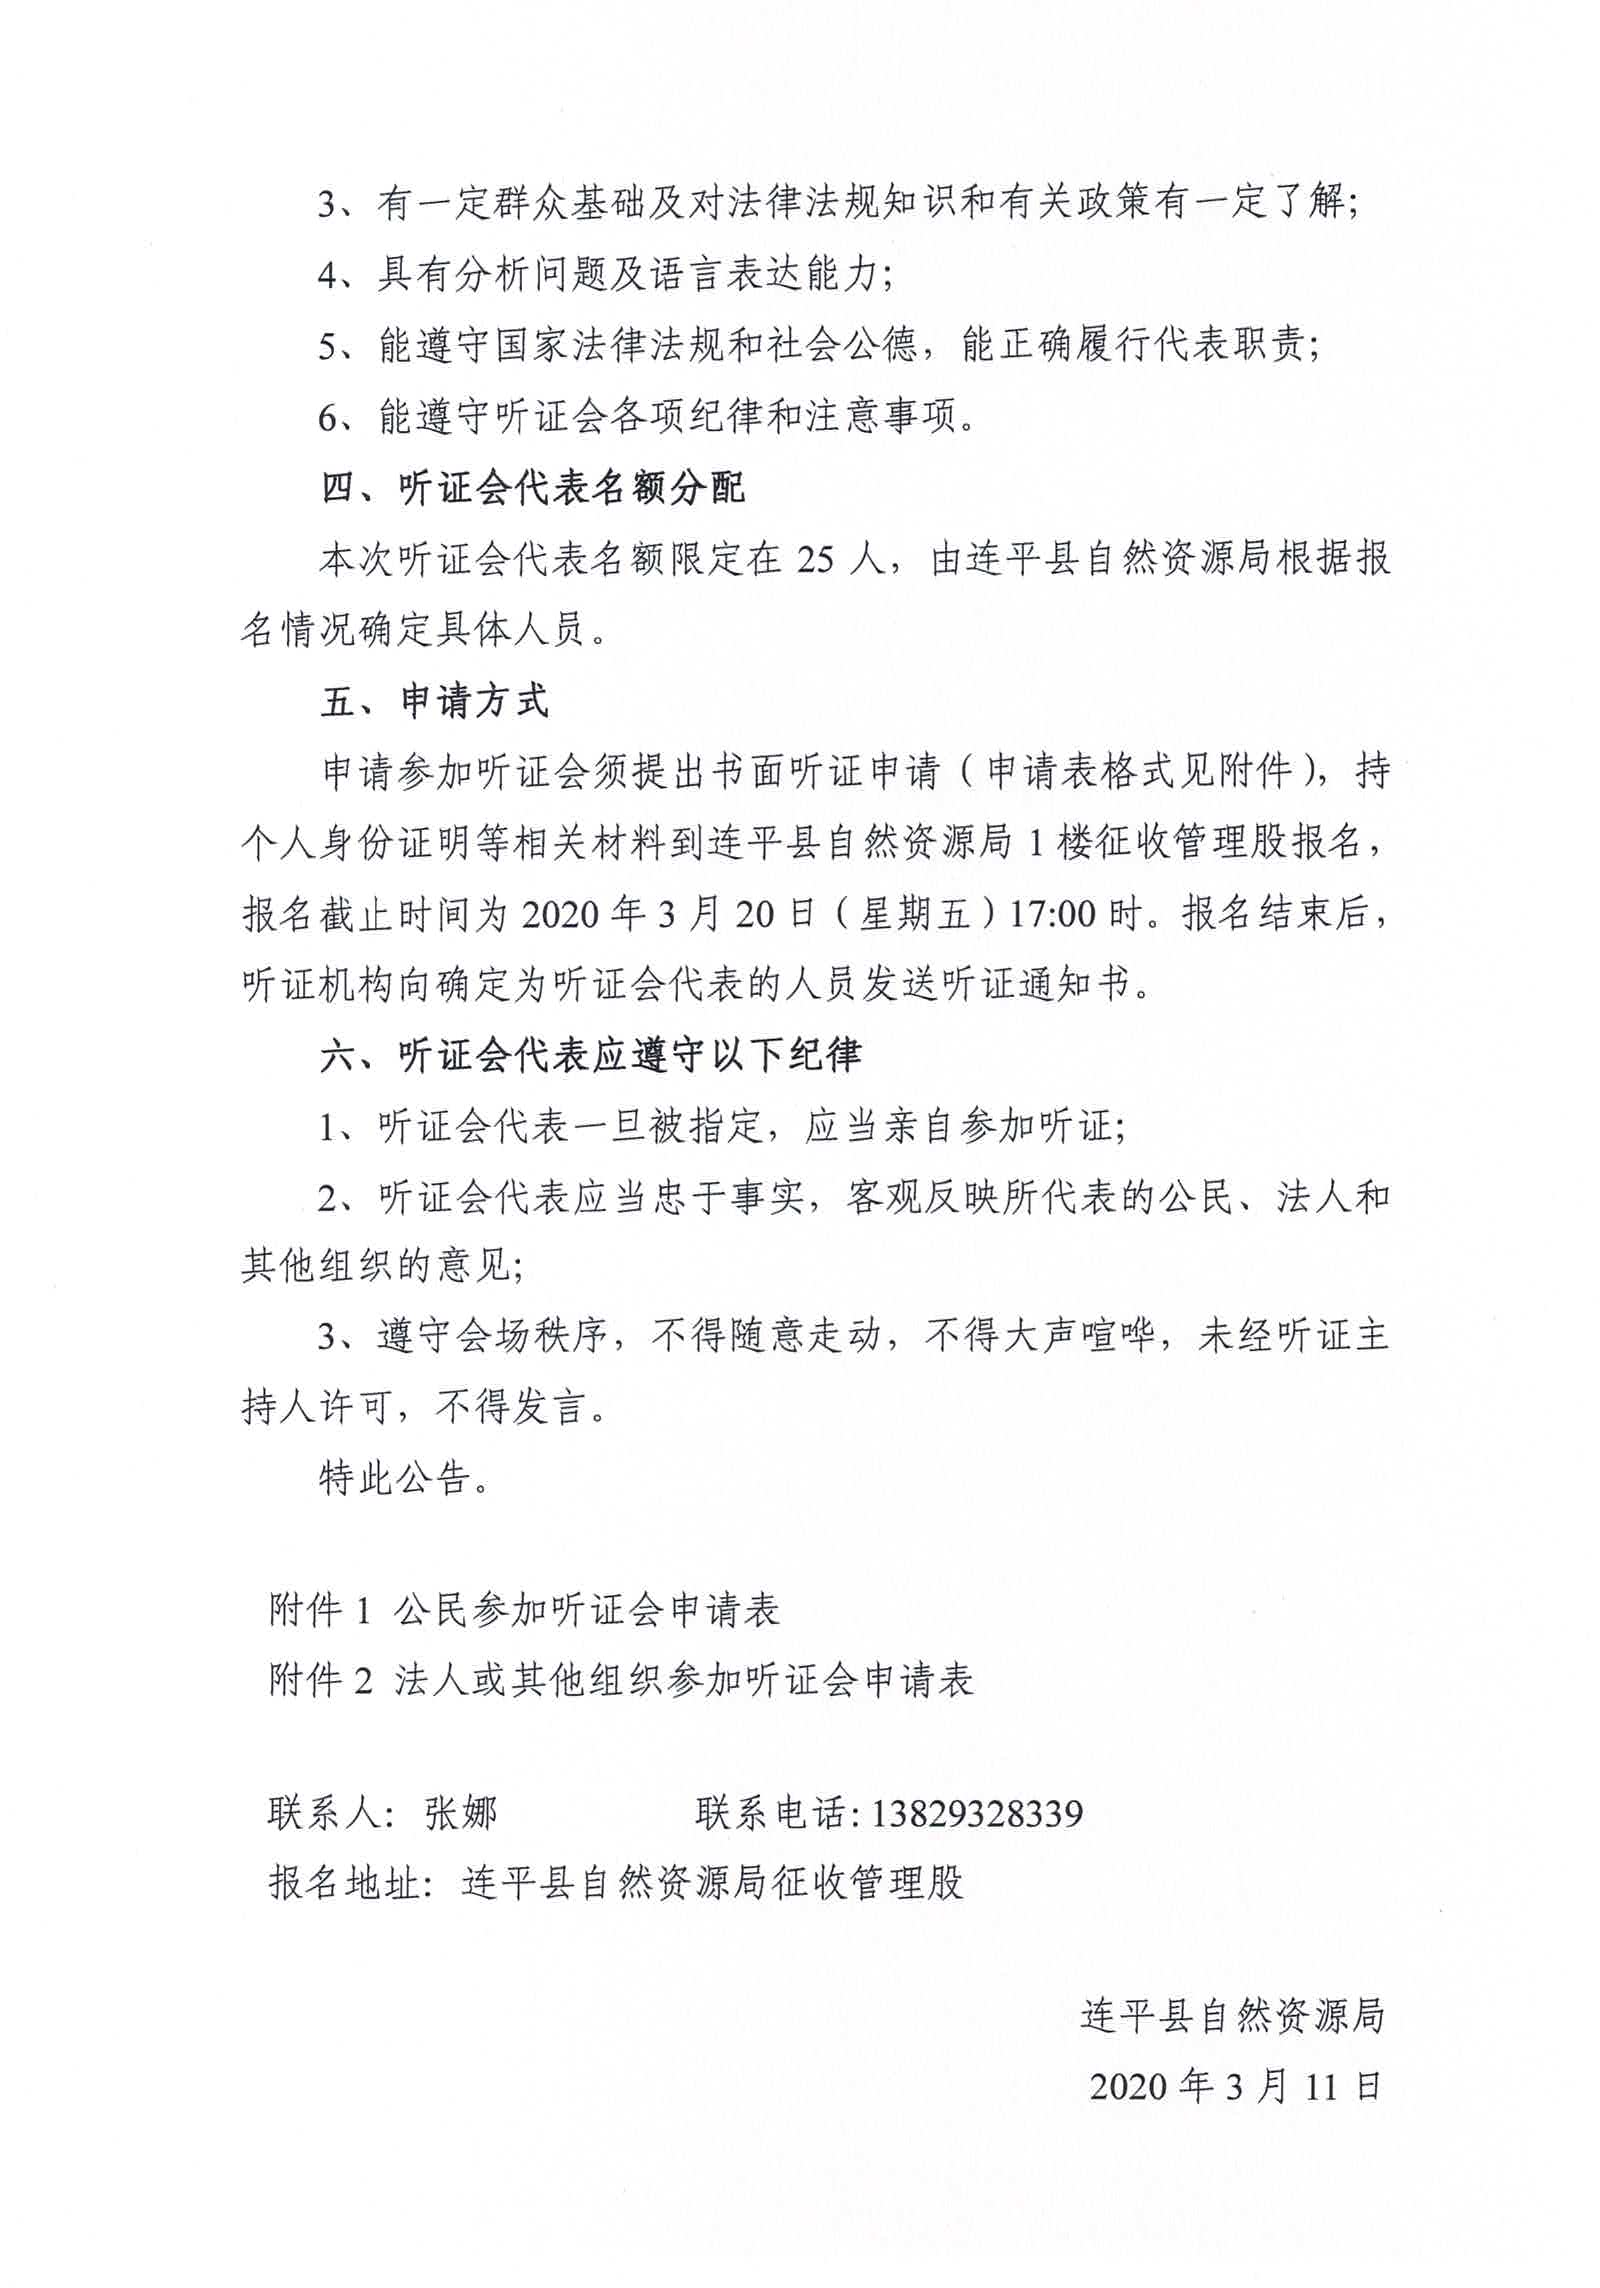 连平县征收农用地区片综合地价制定项目成果听证会公告_页面_2.jpg